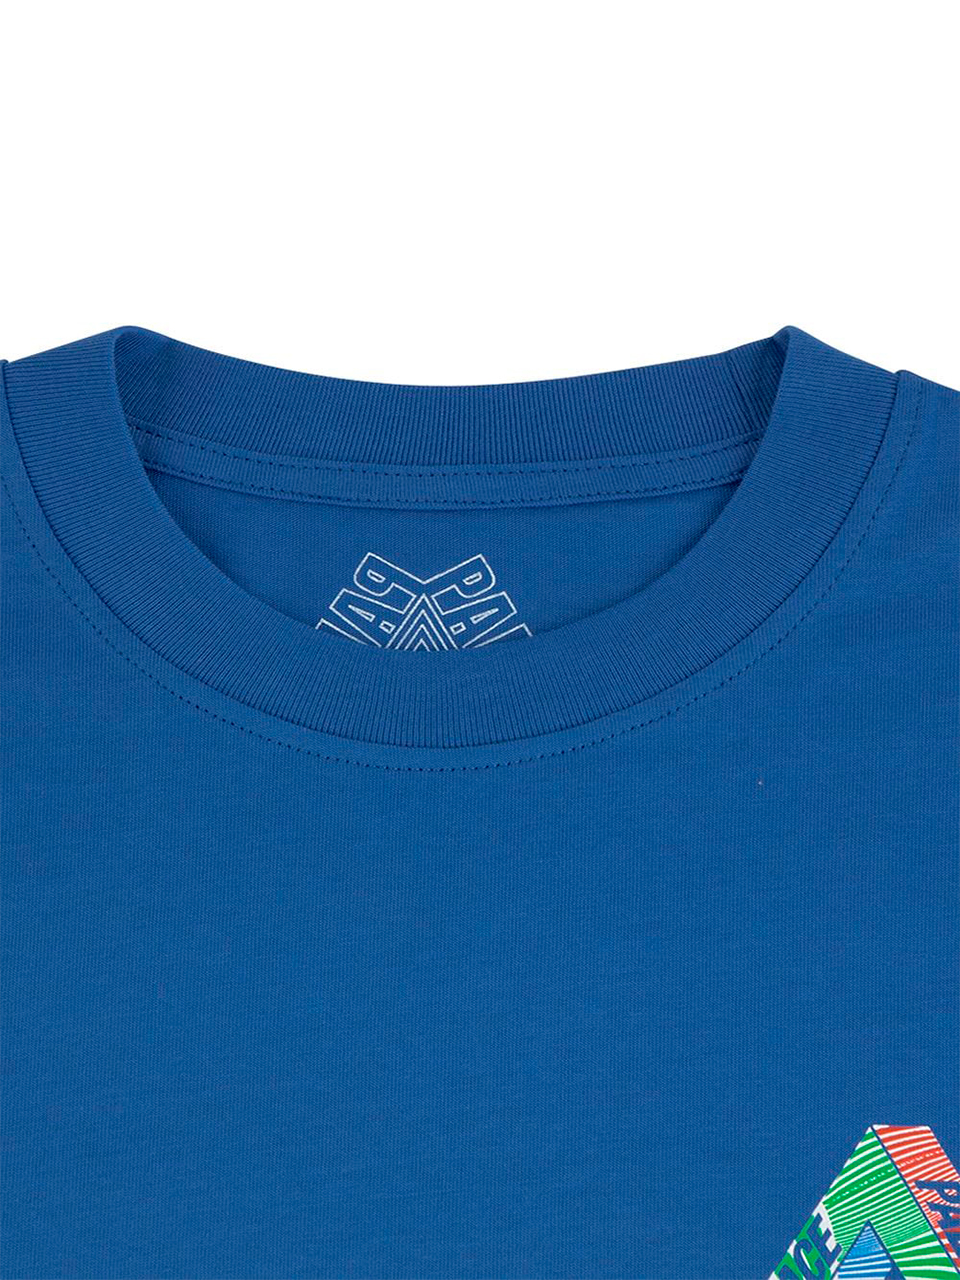 Imagem de: Camiseta Palace Azul Tri-Tex